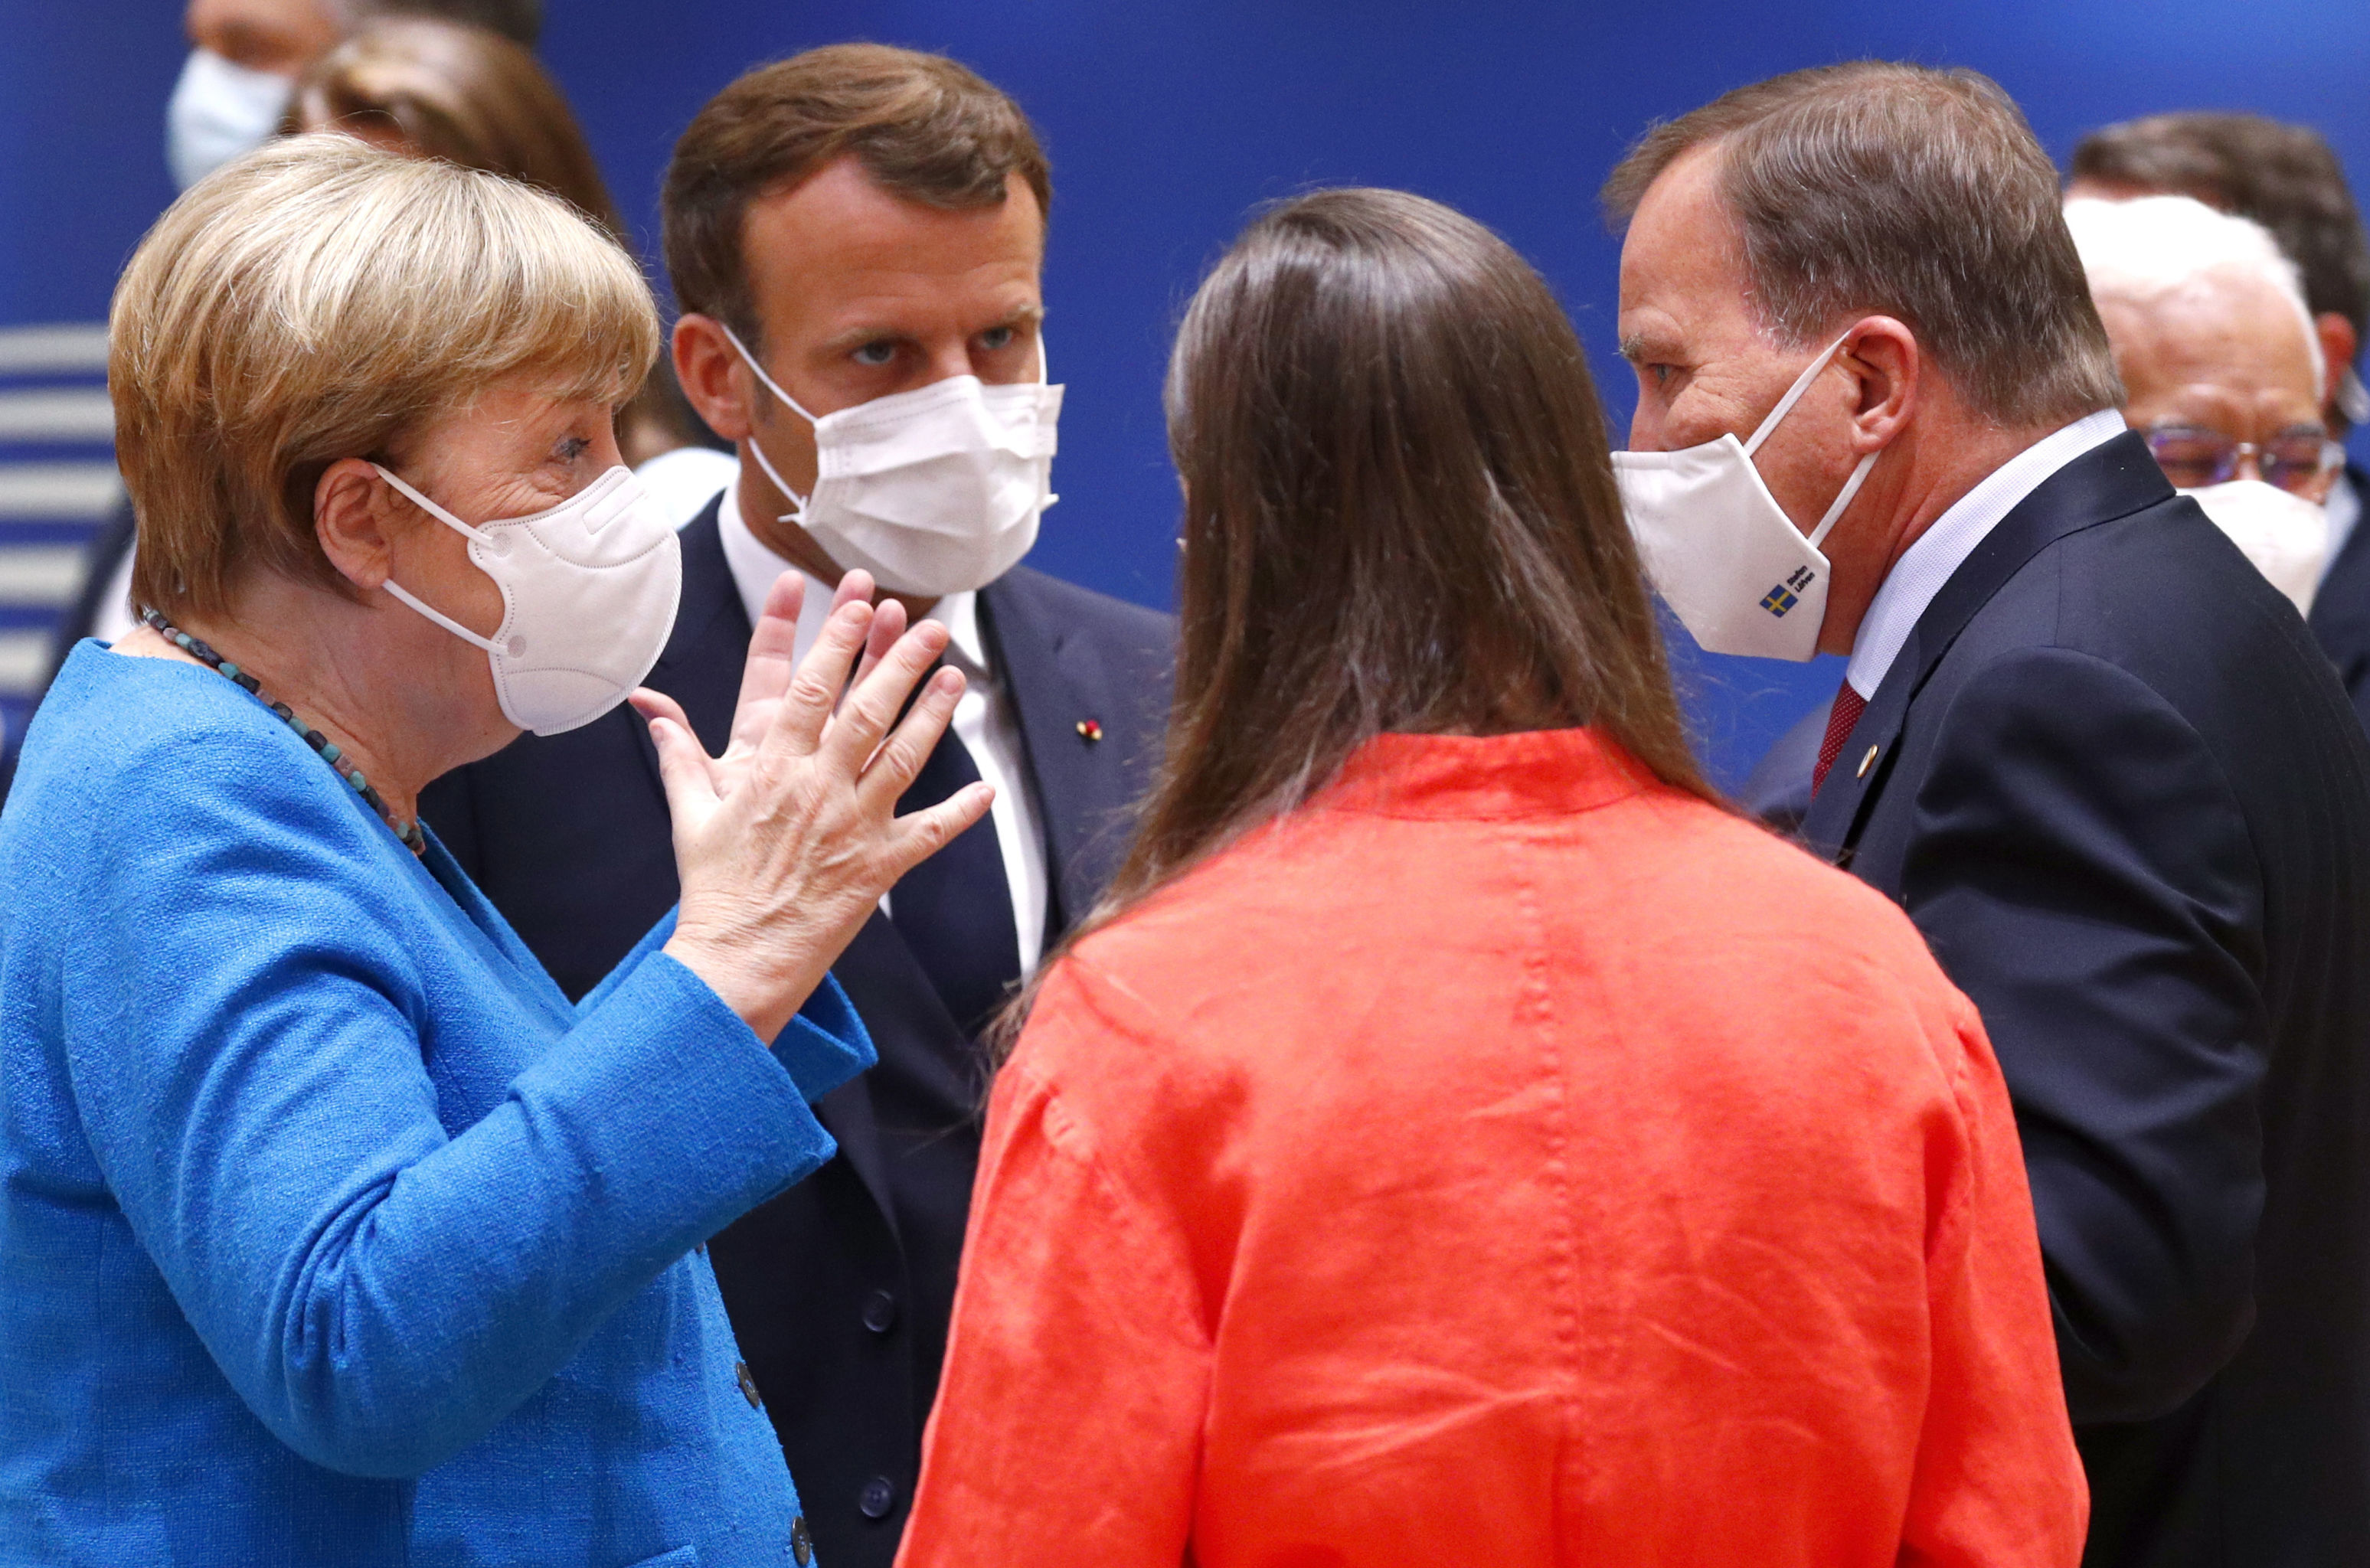 Канцлер Германии Ангела Меркель (слева) беседует с президентом Франции Эммануэлем Макроном (второй слева), премьер-министром Финляндии Санной Марин (вторая справа) и премьер-министром Швеции Стефаном Лёвеном (справа) во время встречи за круглым столом на саммите ЕС в Брюсселе, 18 июля 2020 года